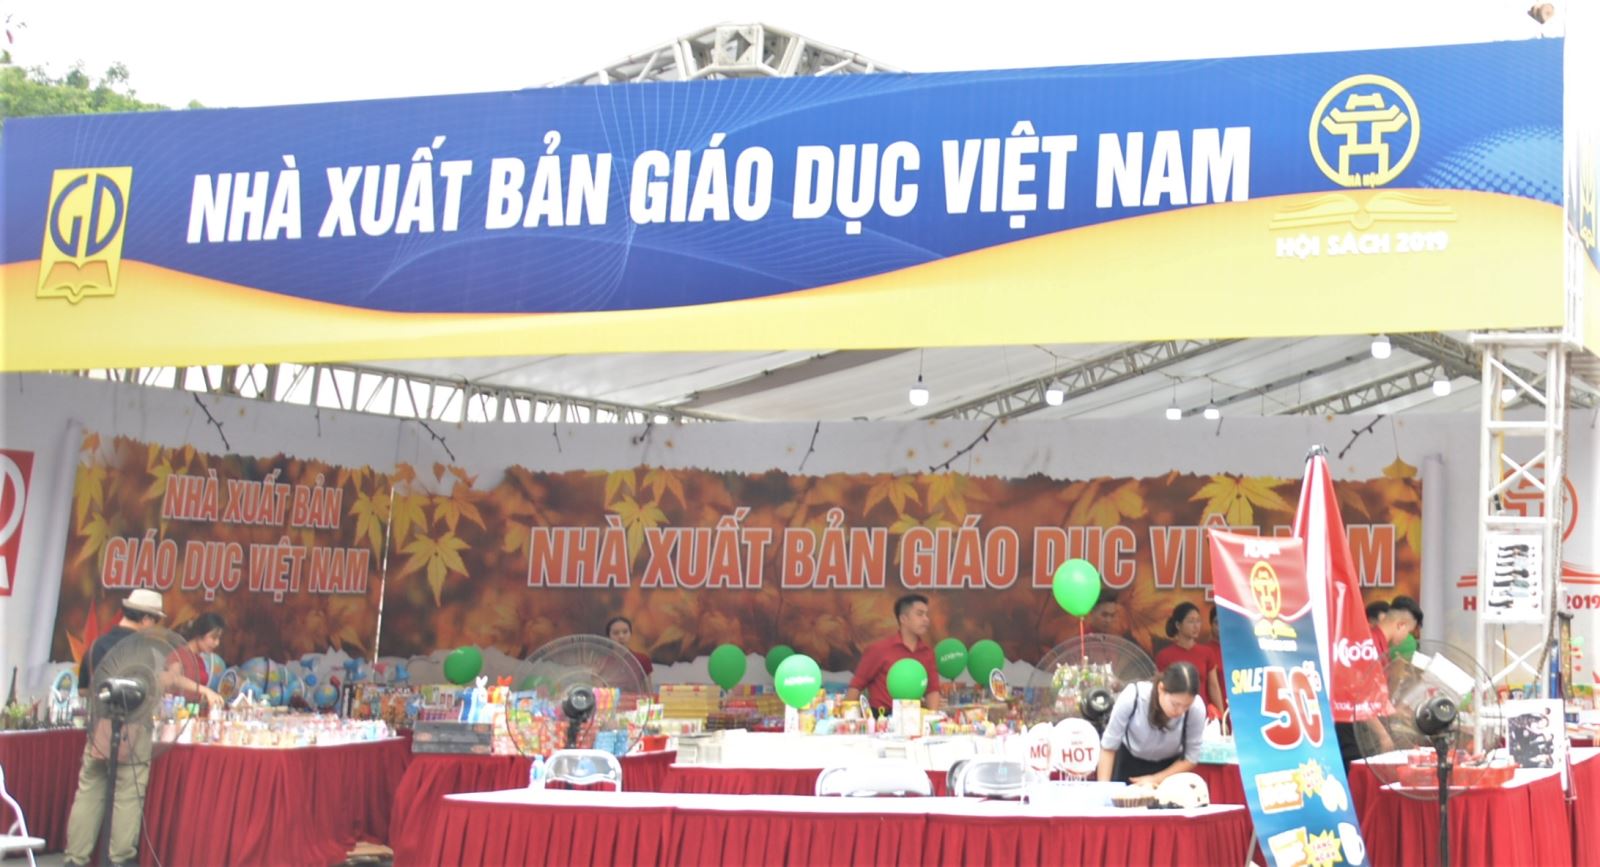 Nhà xuất bản Giáo dục Việt Nam tham gia Hội sách Hà Nội lần thứ VI năm 2019